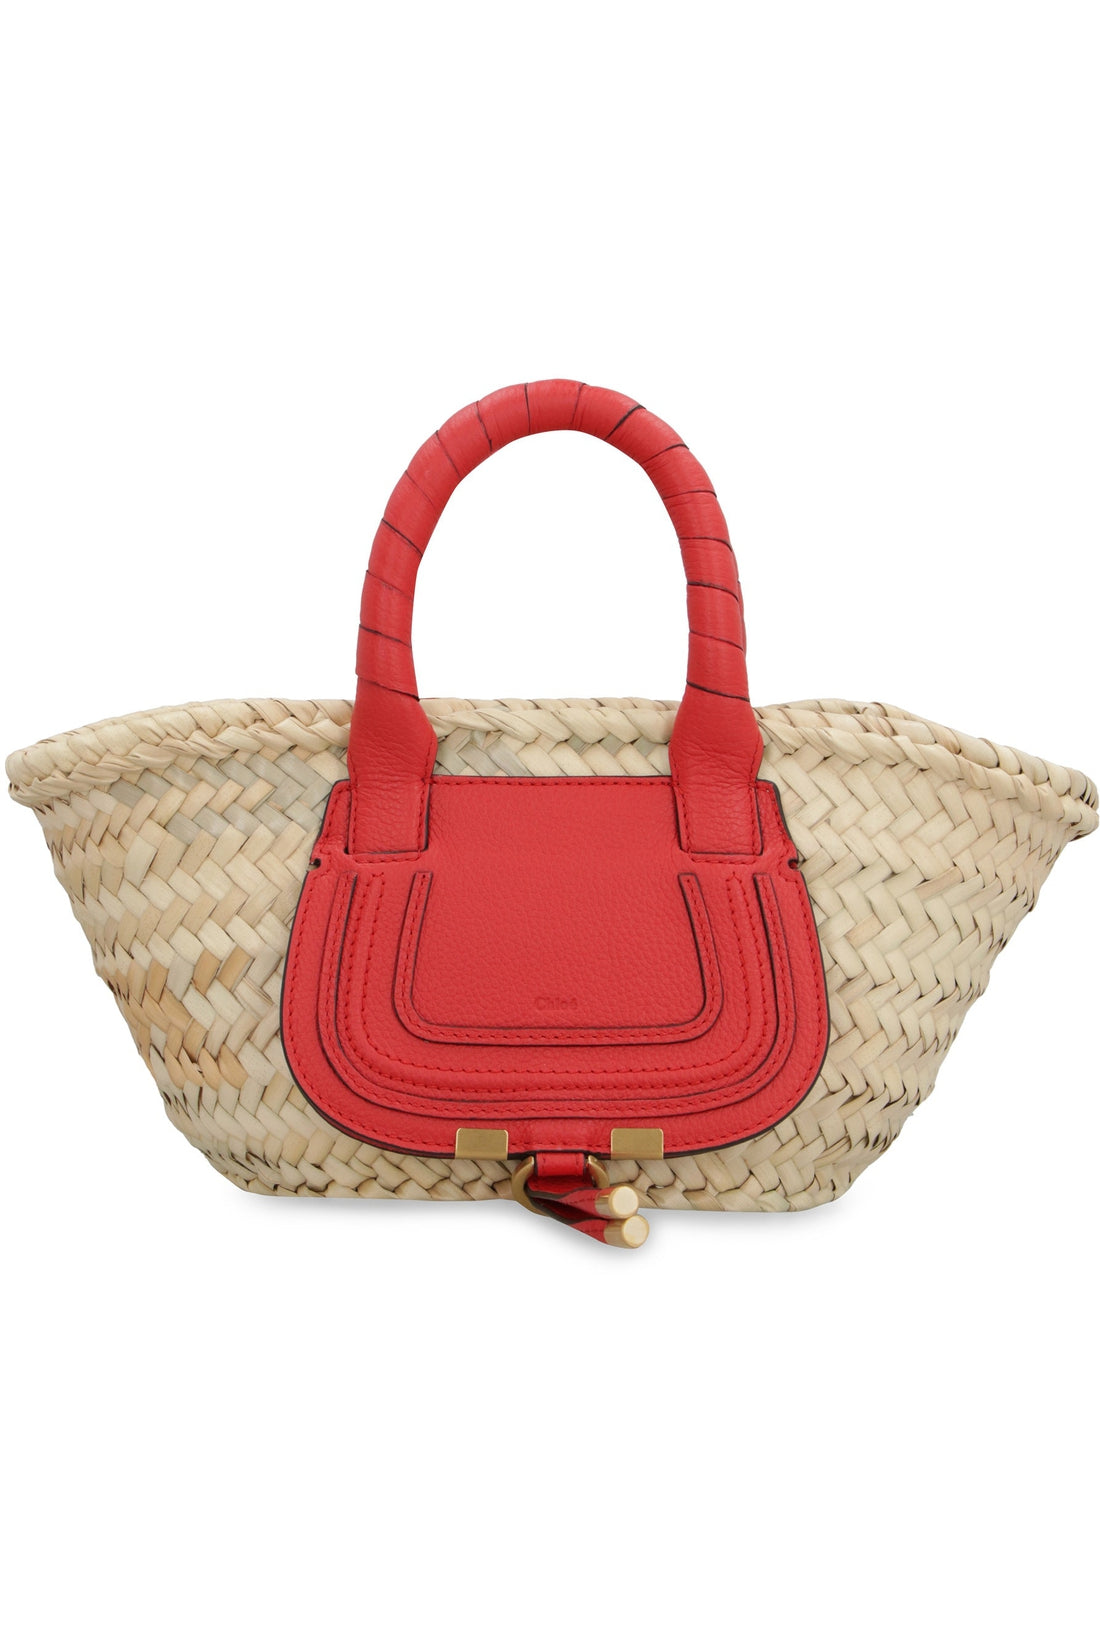 Chloé-OUTLET-SALE-Marcie mini basket bag-ARCHIVIST